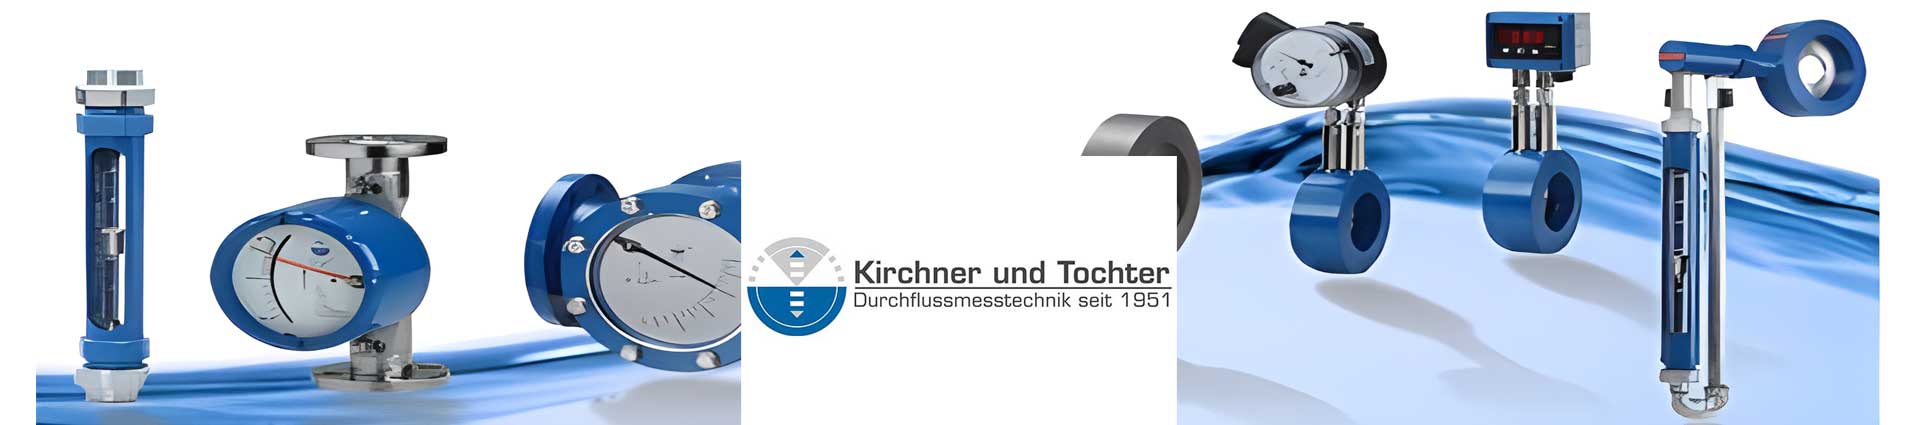 德国Kirchner und Tochter